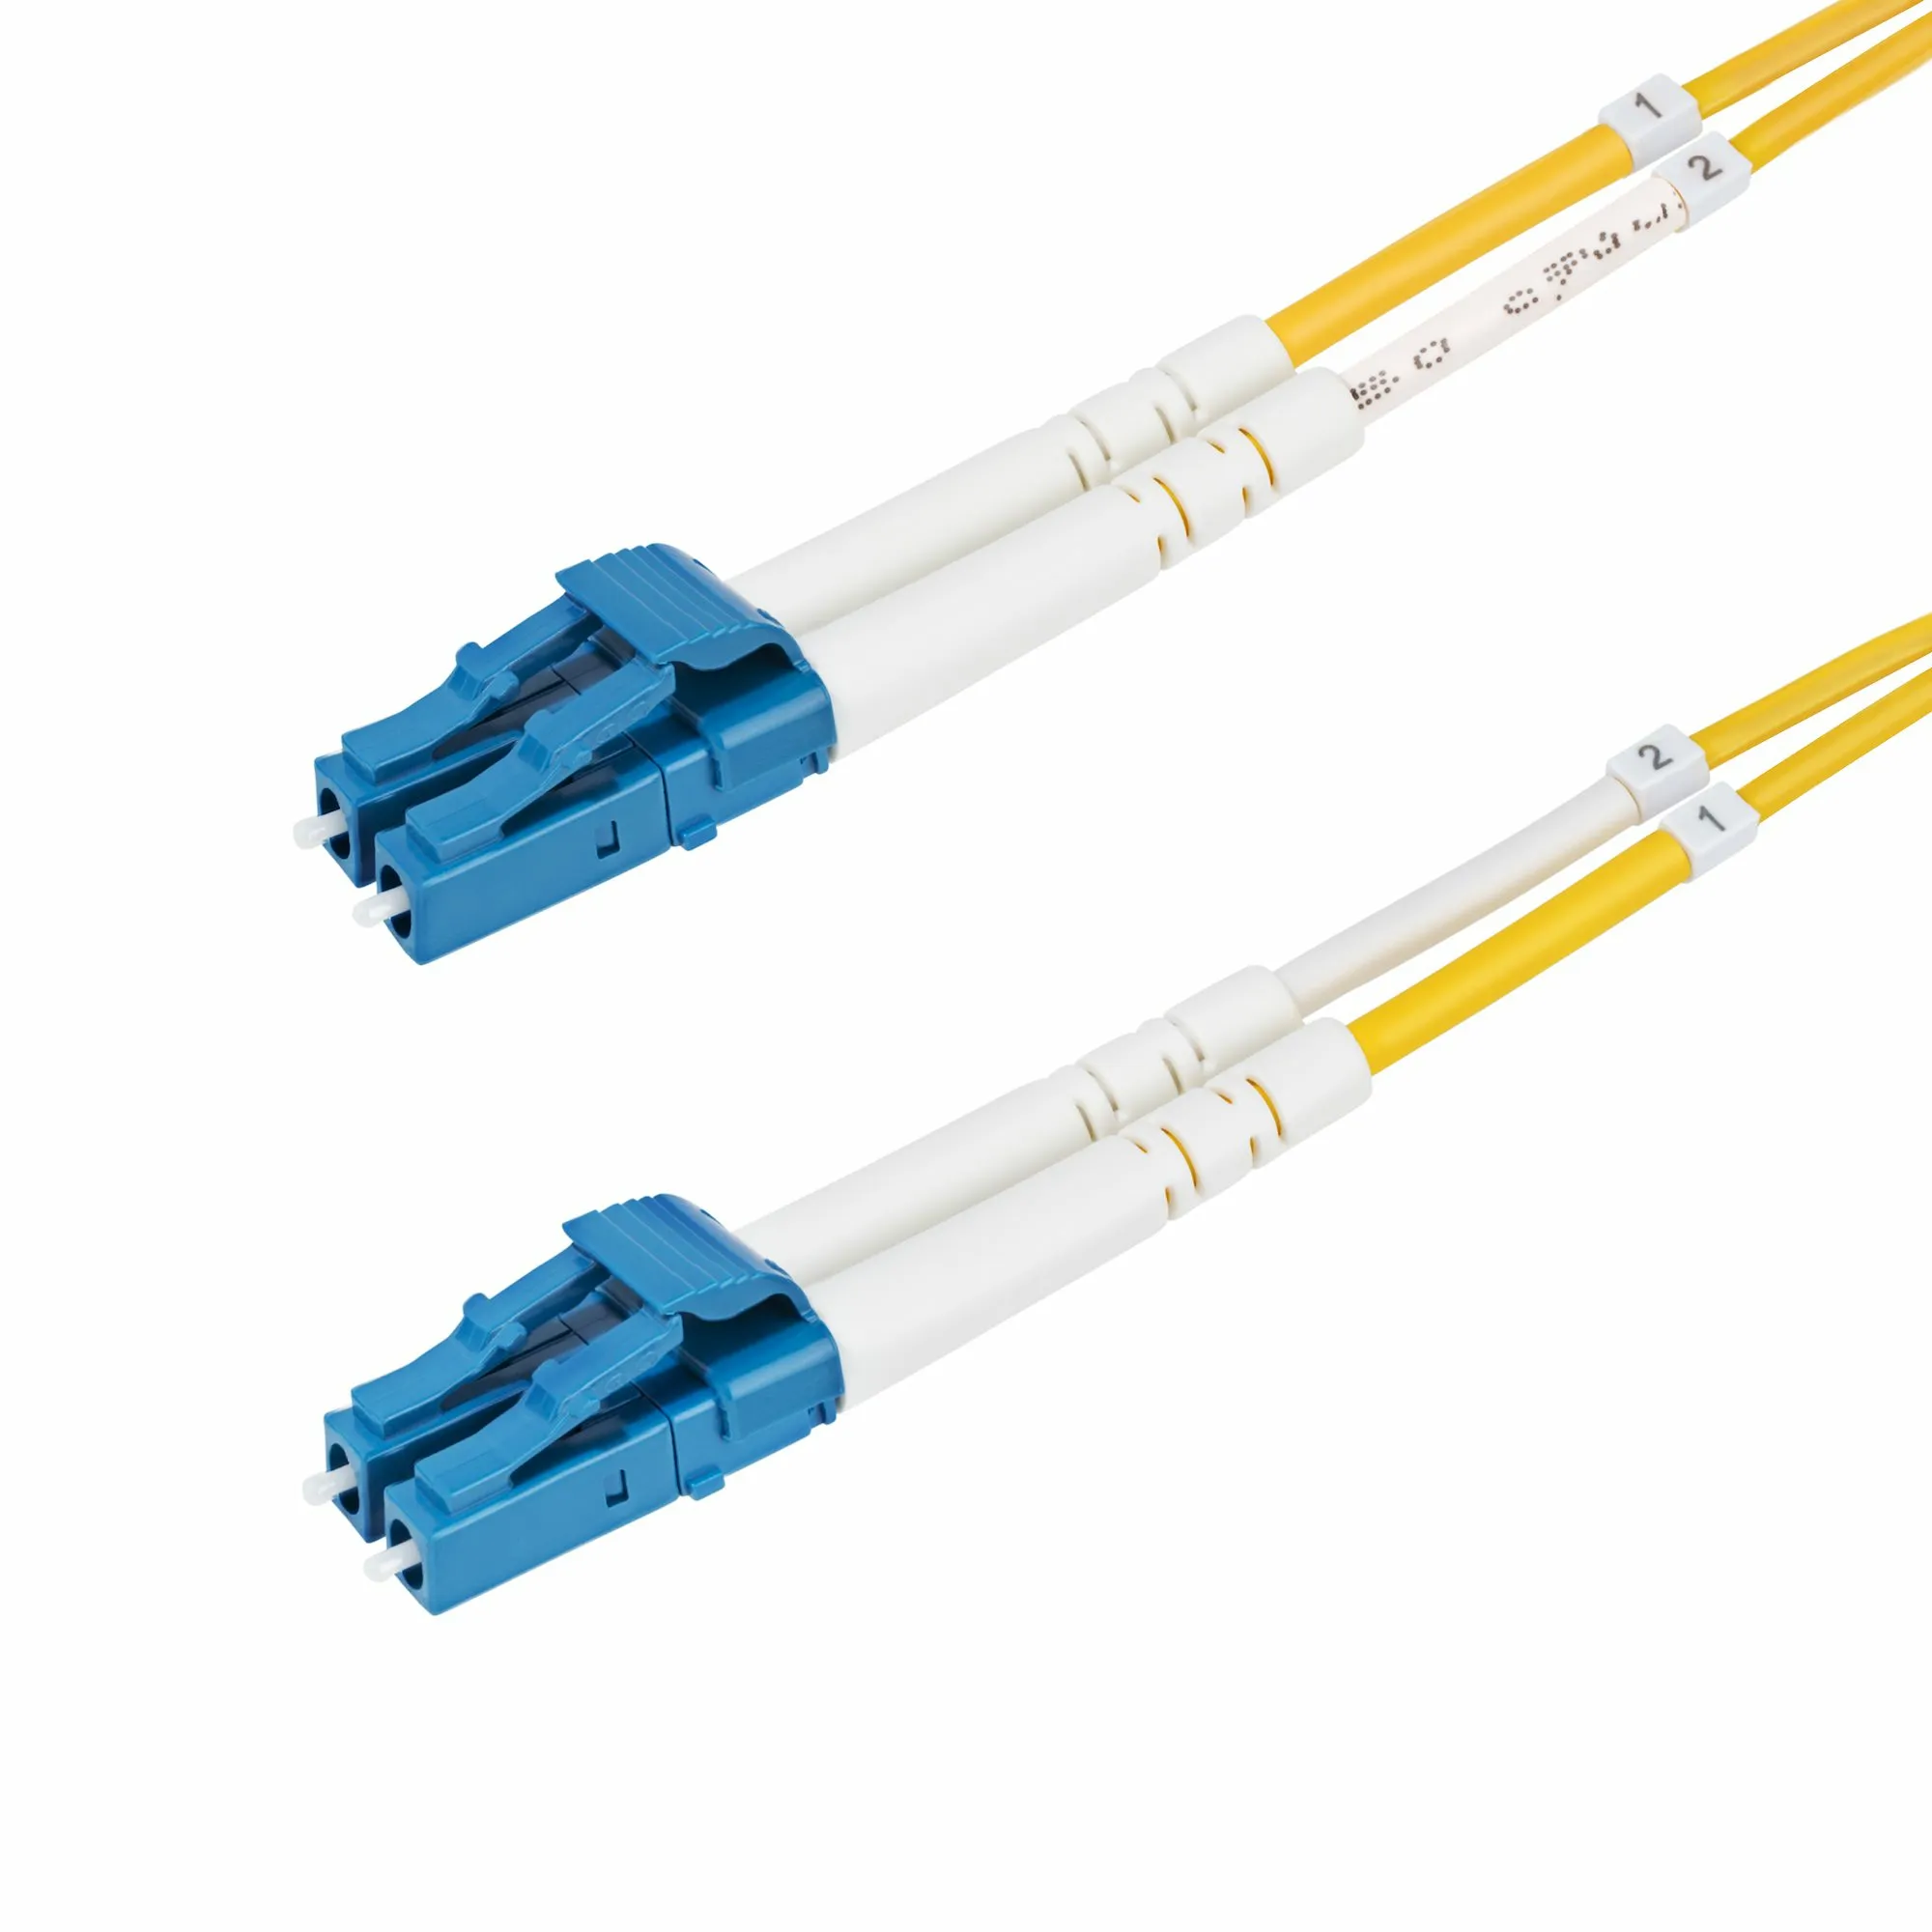 Achat StarTech.com Câble Fibre Optique de 5m Duplex Monomode au meilleur prix